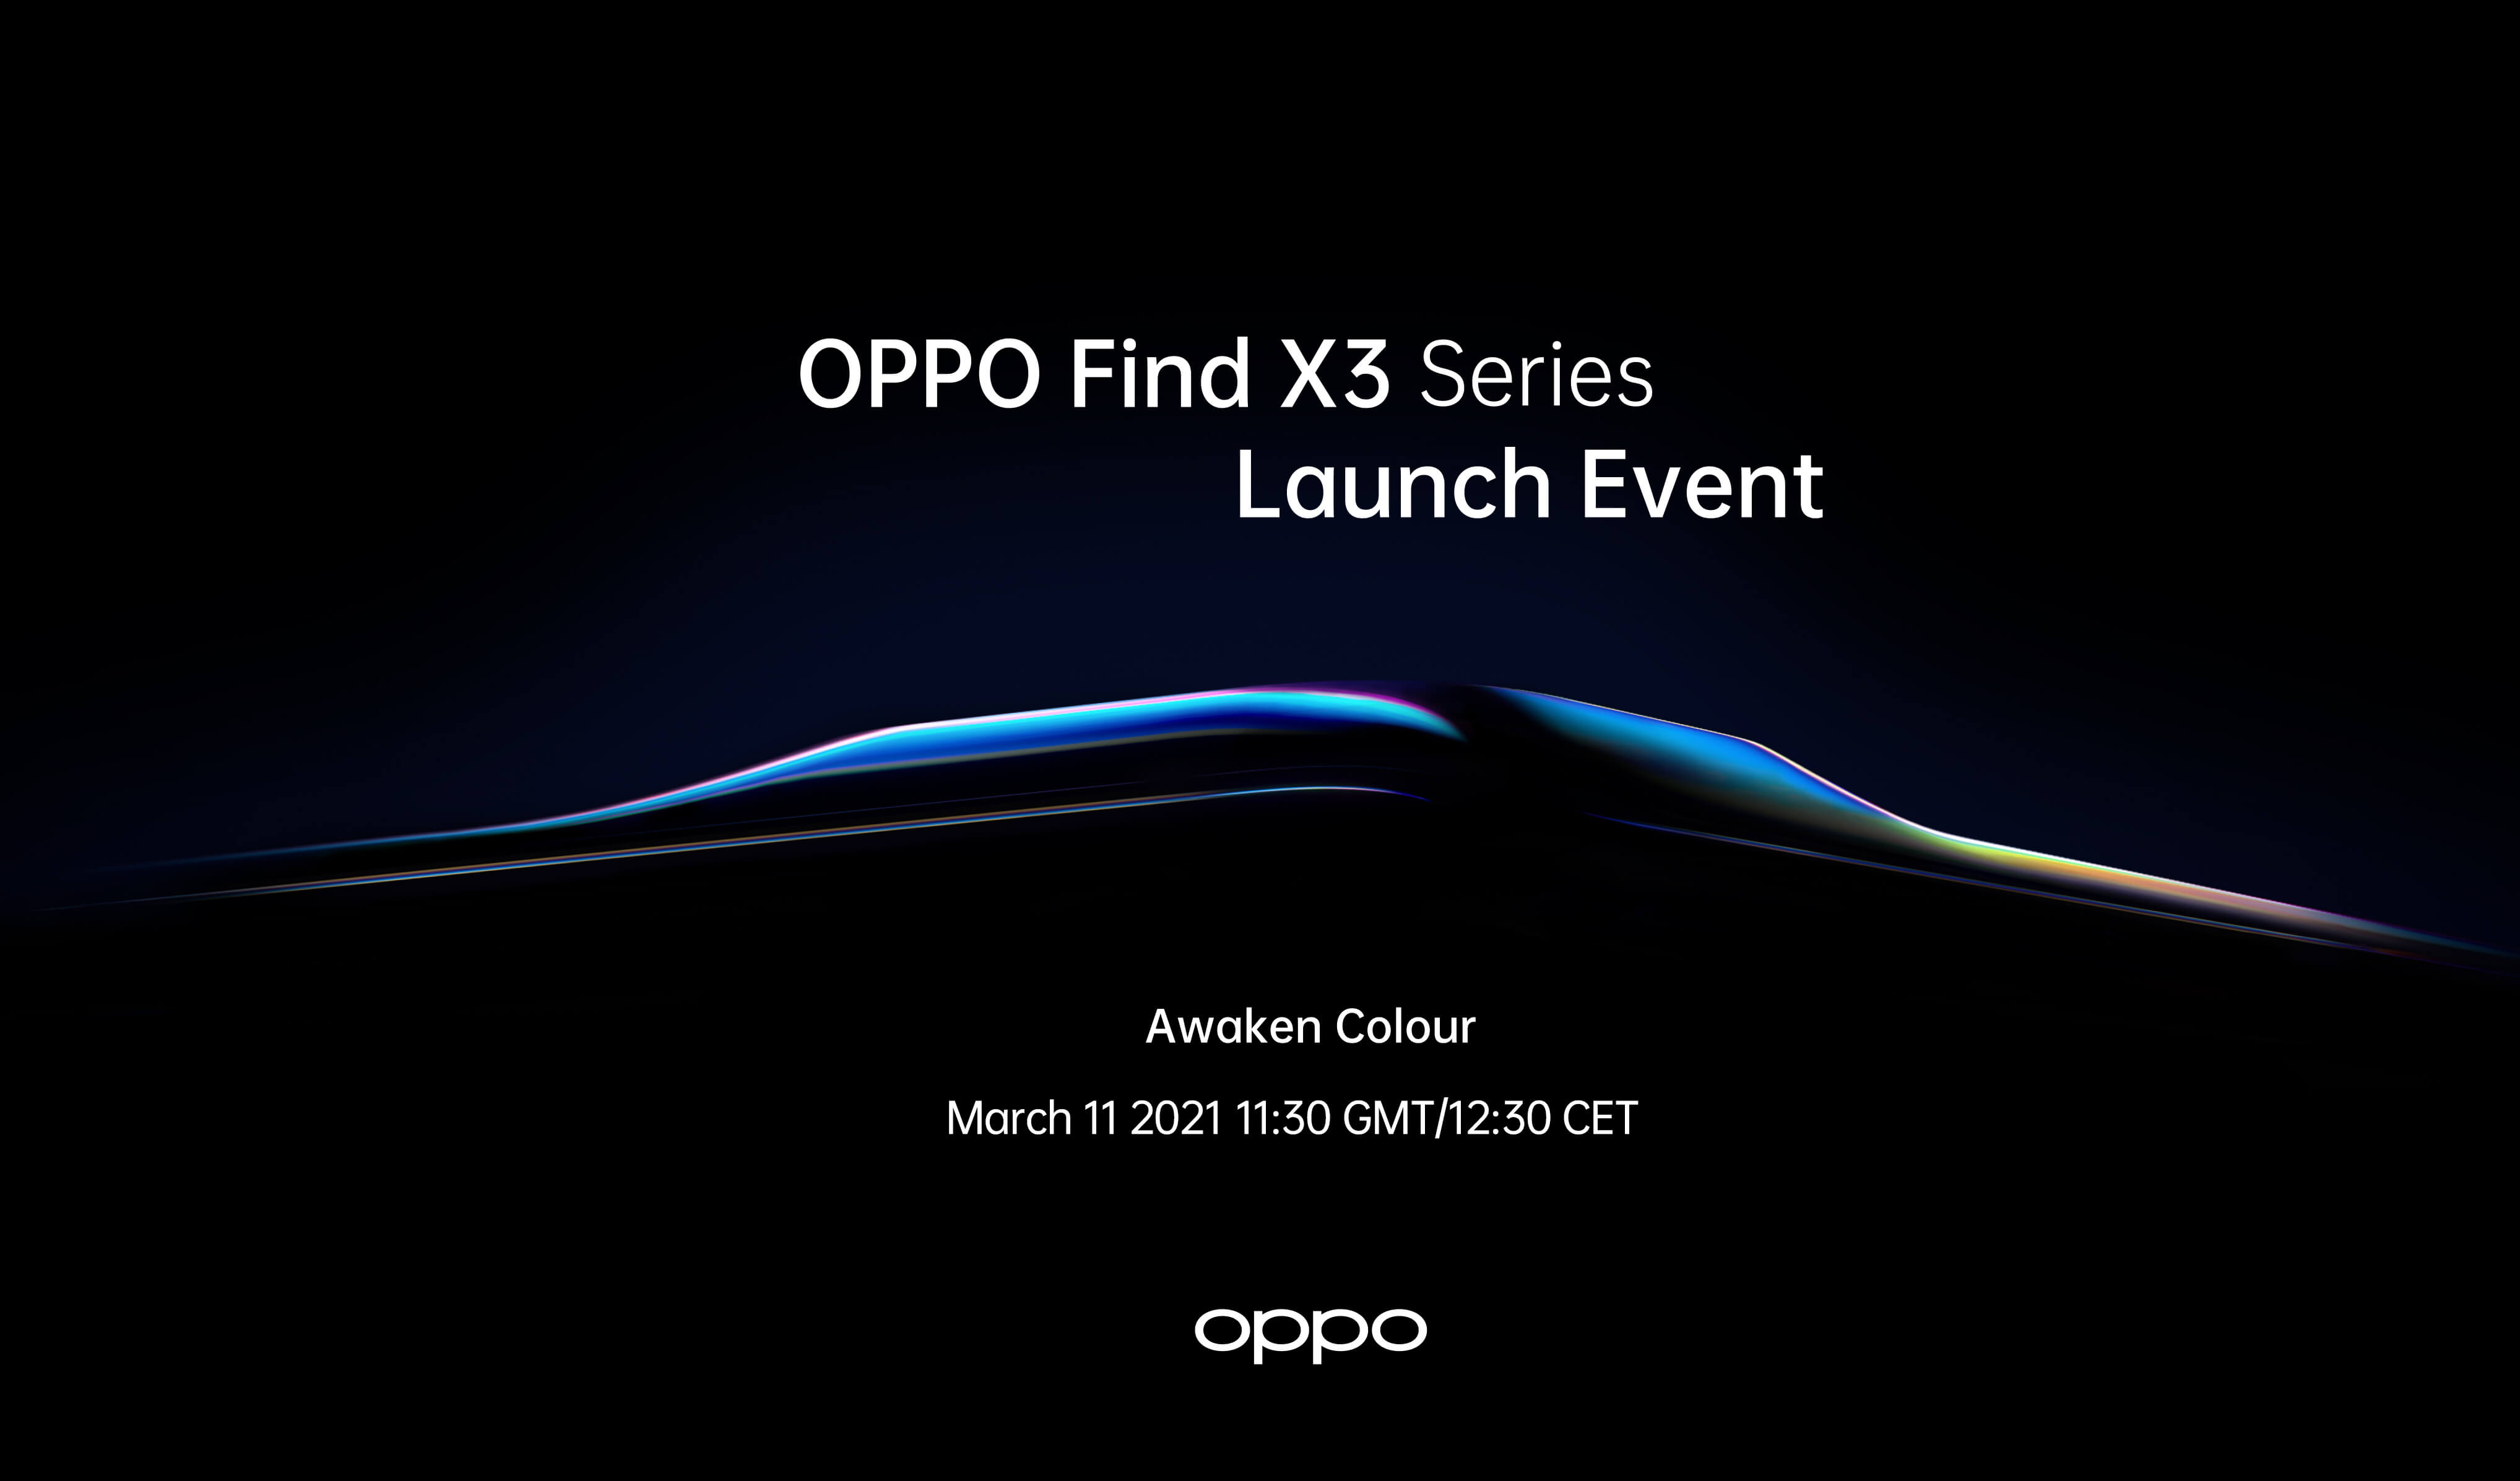 OPPO lanceert Find X3 Series met 1 miljard-kleurendisplay op 11 maart